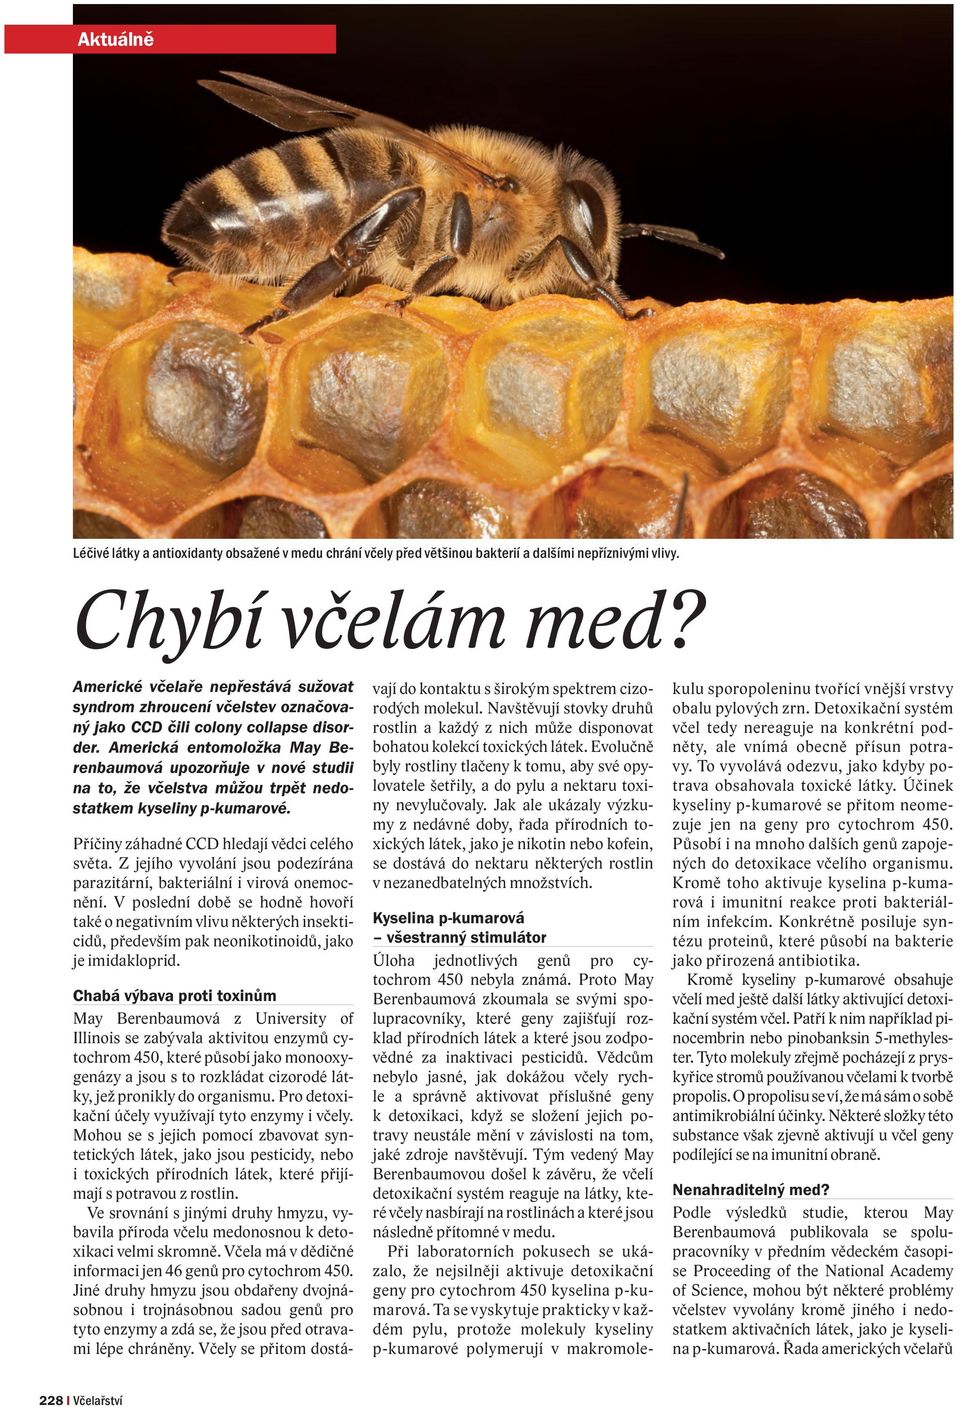 Americká entomoložka May Berenbaumová upozorňuje v nové studii na to, že včelstva můžou trpět nedostatkem kyseliny p-kumarové. Příčiny záhadné CCD hledají vědci celého světa.